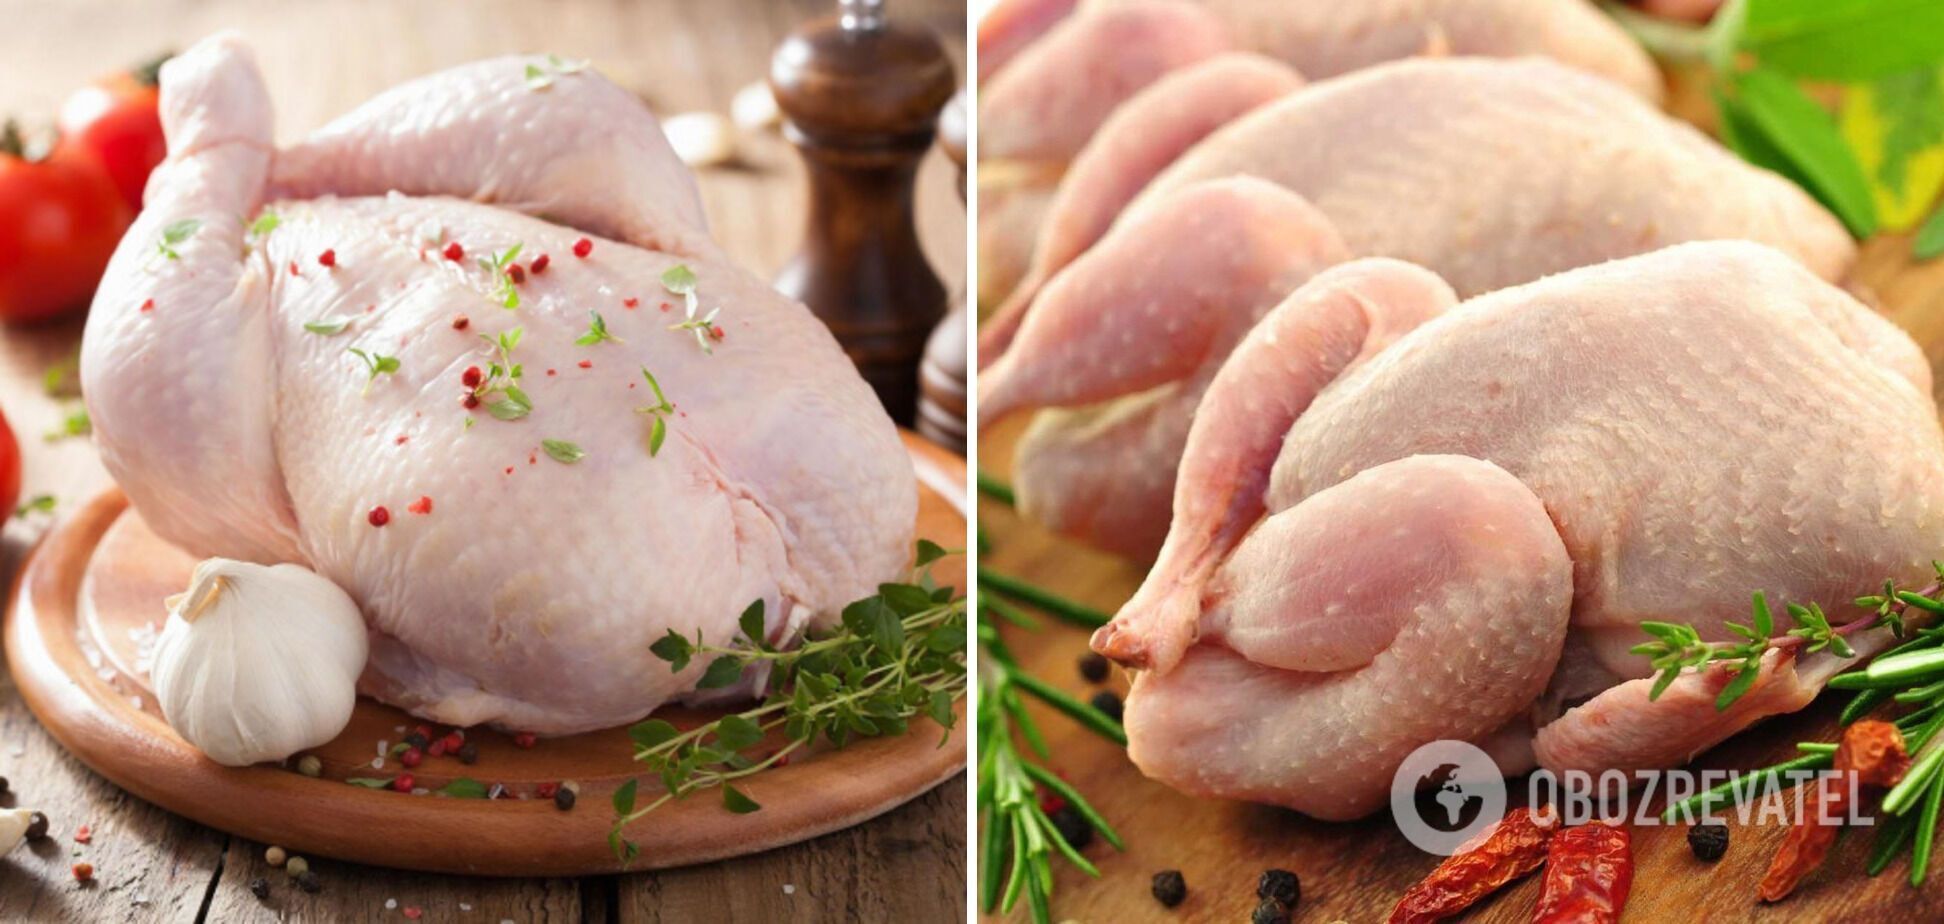 Как можно легко испортить куриное мясо: никогда его так не готовьте